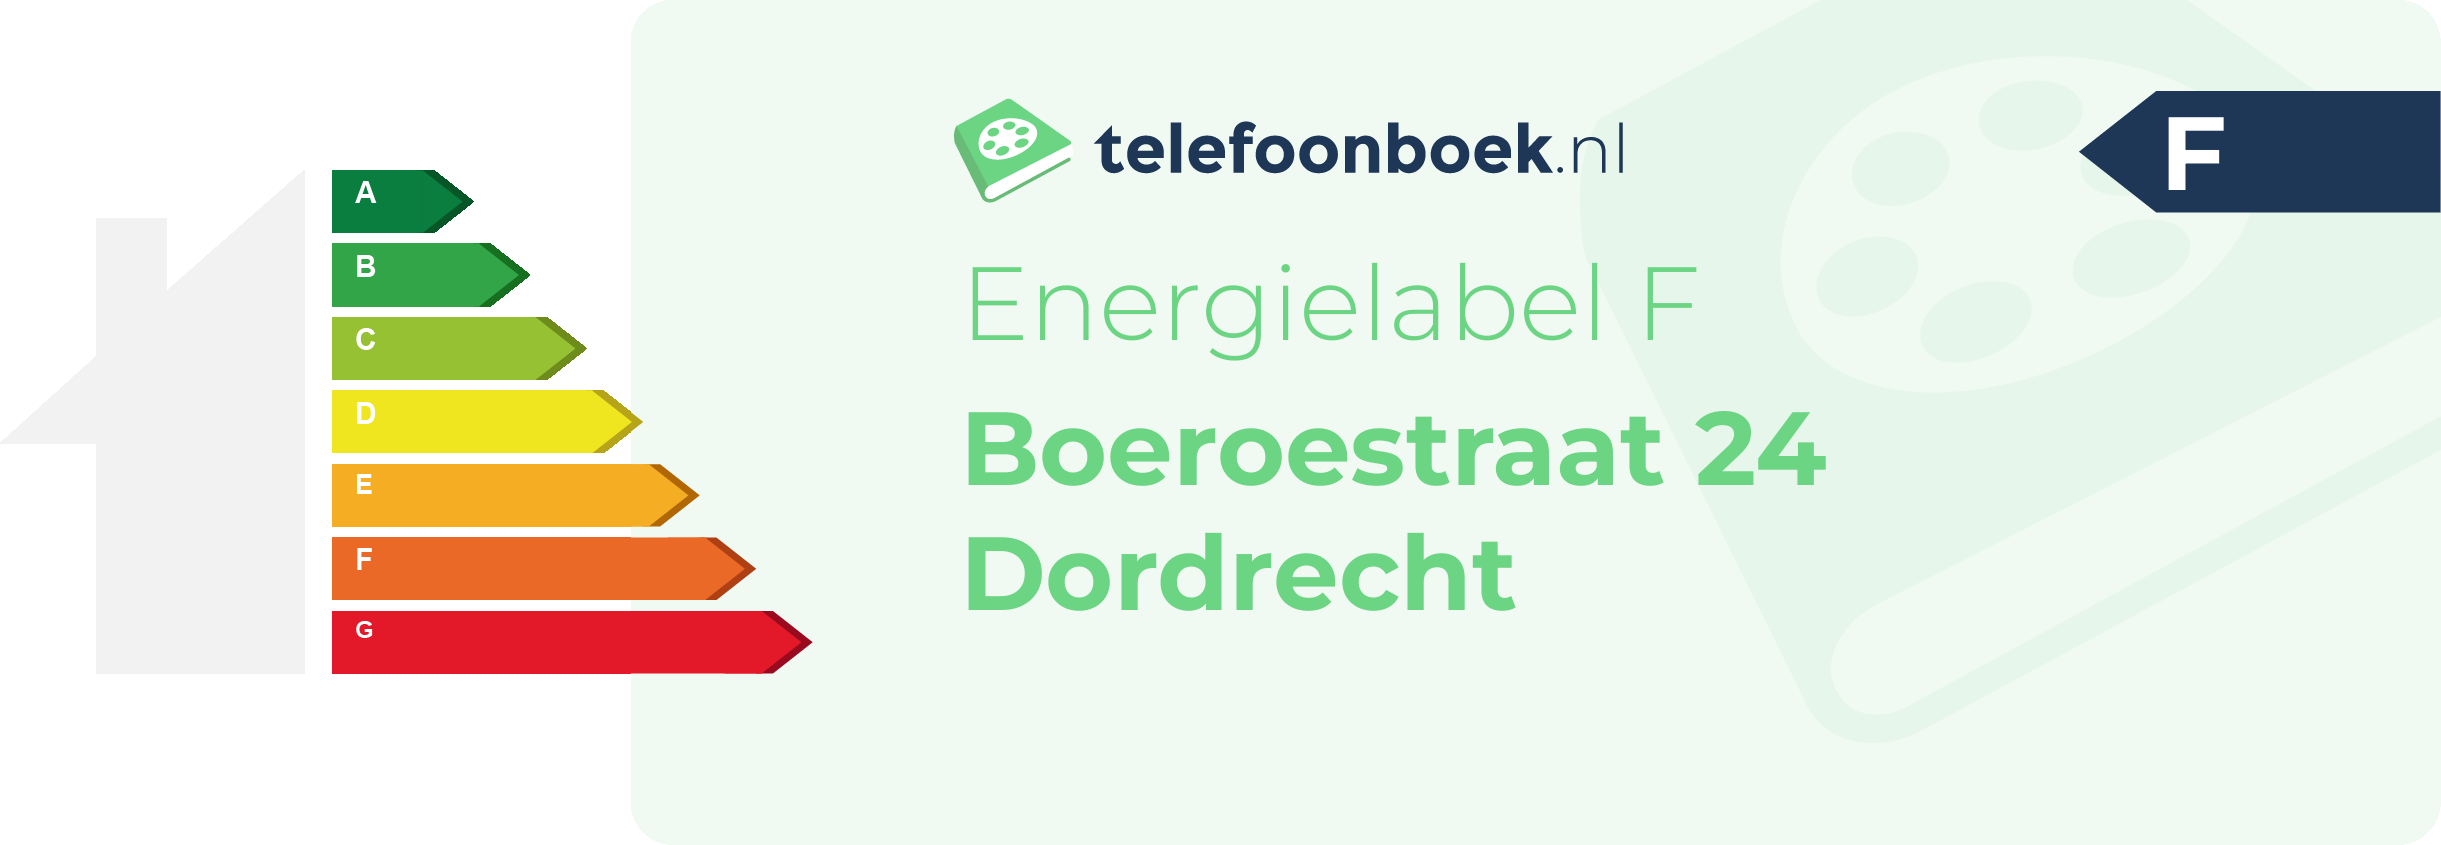 Energielabel Boeroestraat 24 Dordrecht